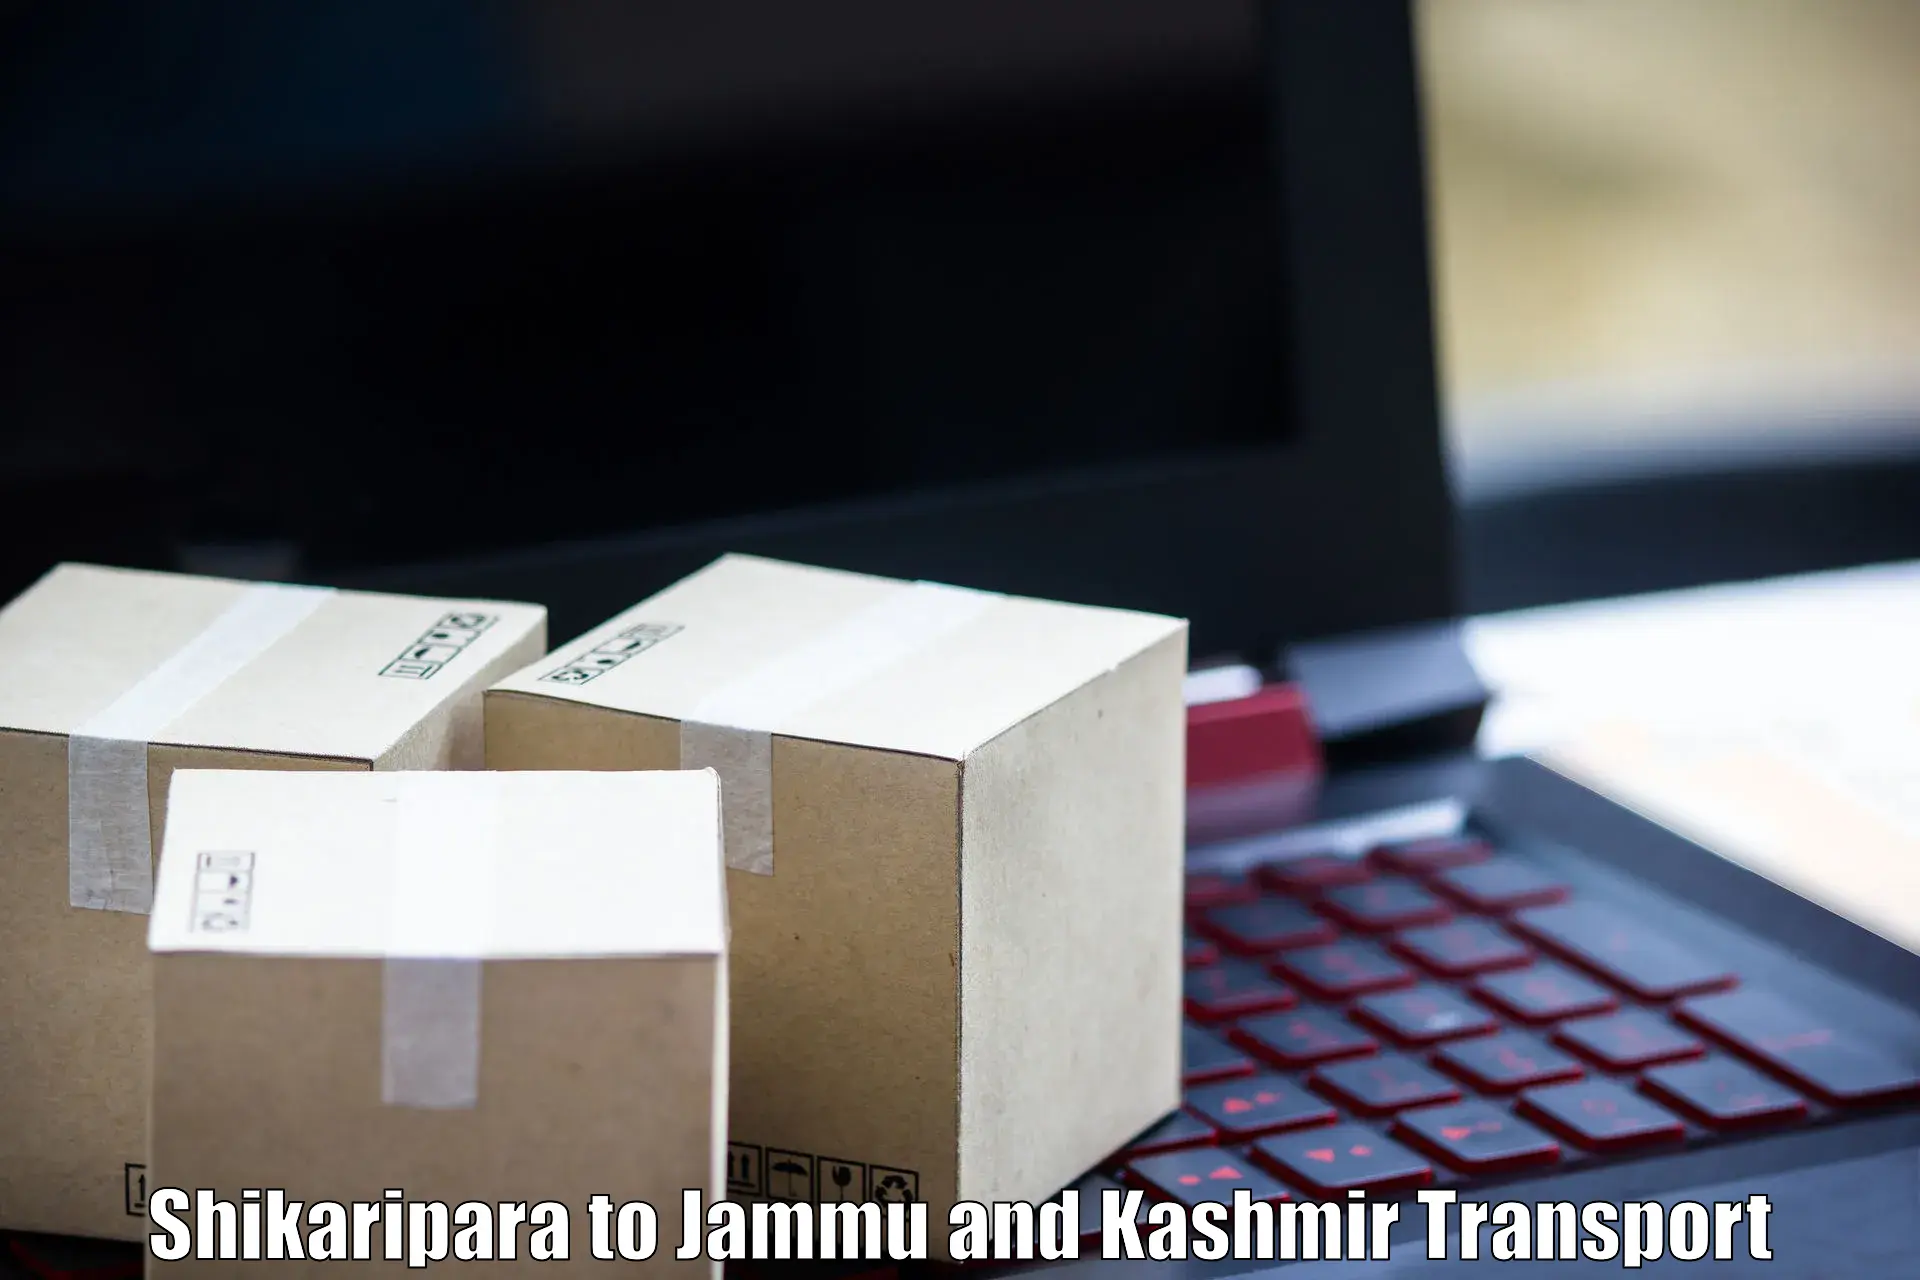 Cargo train transport services Shikaripara to Srinagar Kashmir